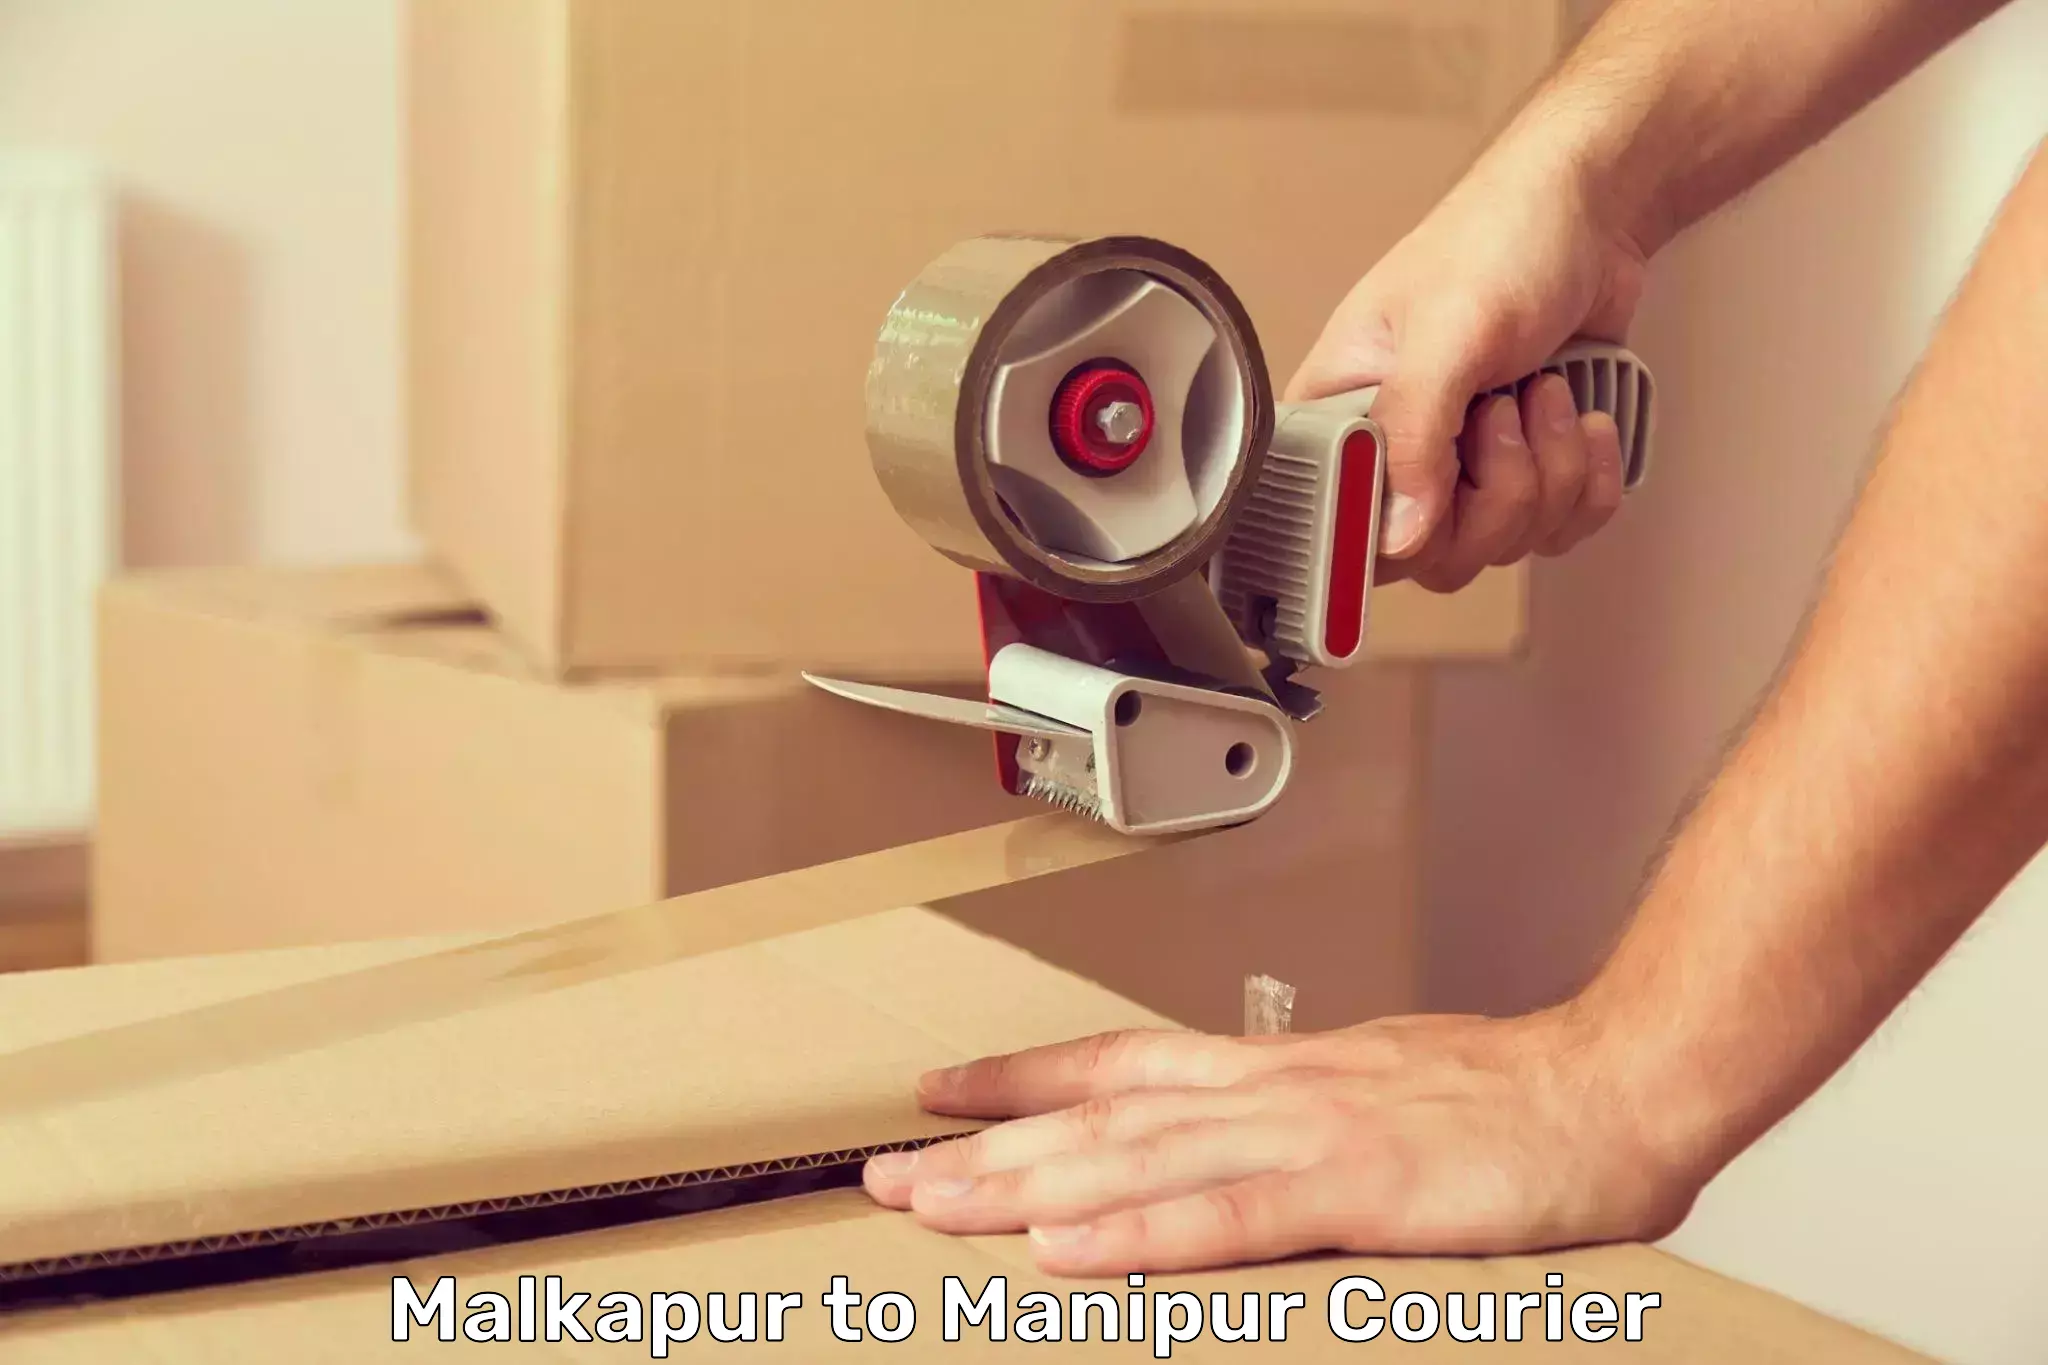 Urban courier service Malkapur to Moirang